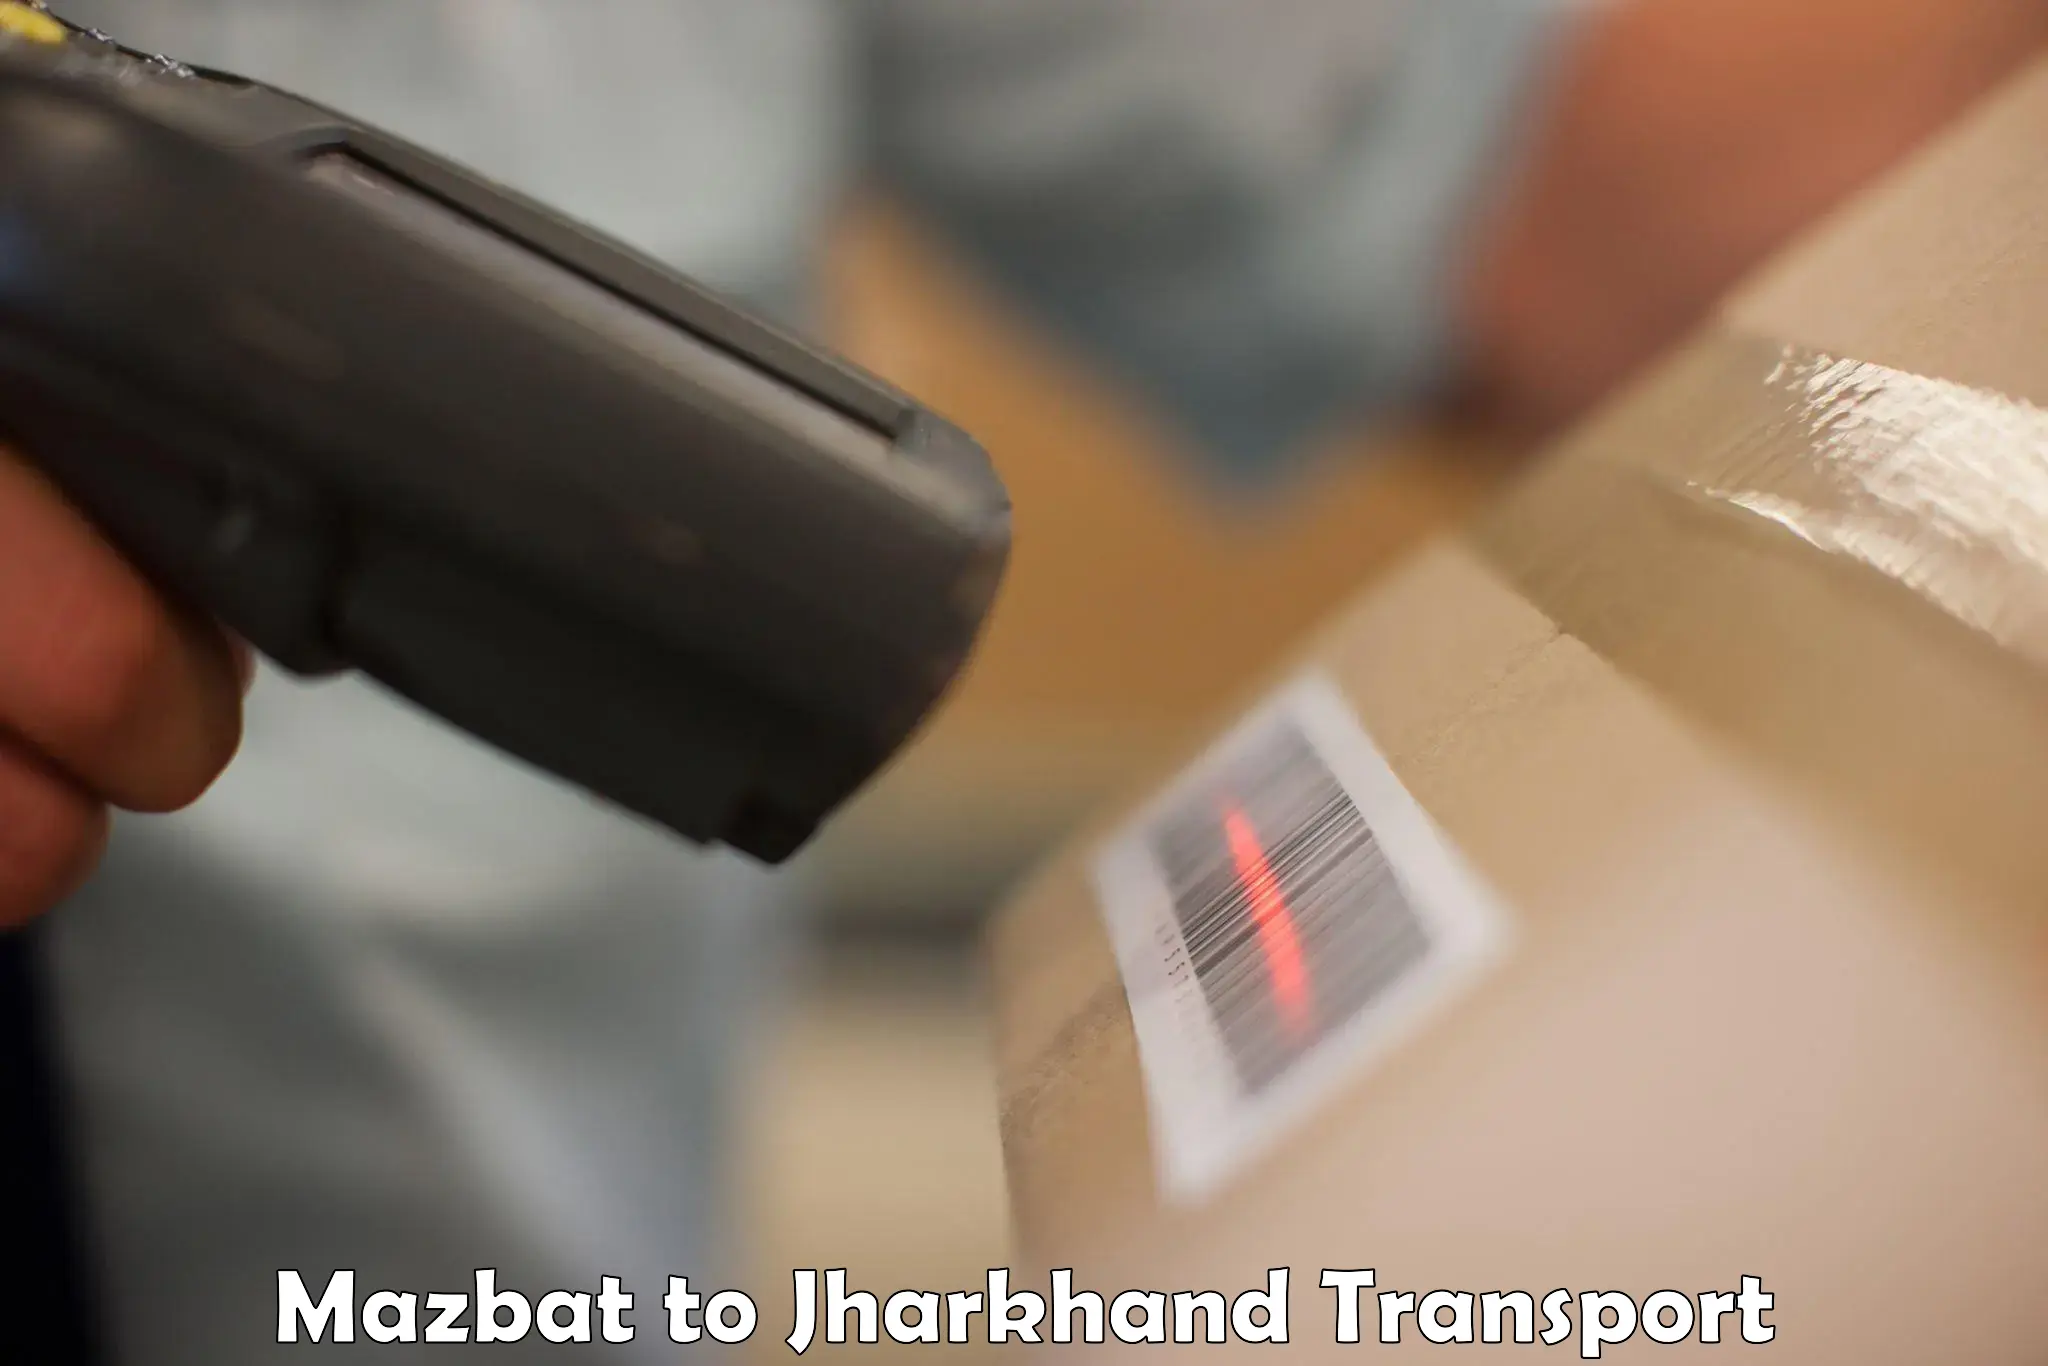 Furniture transport service in Mazbat to Daltonganj